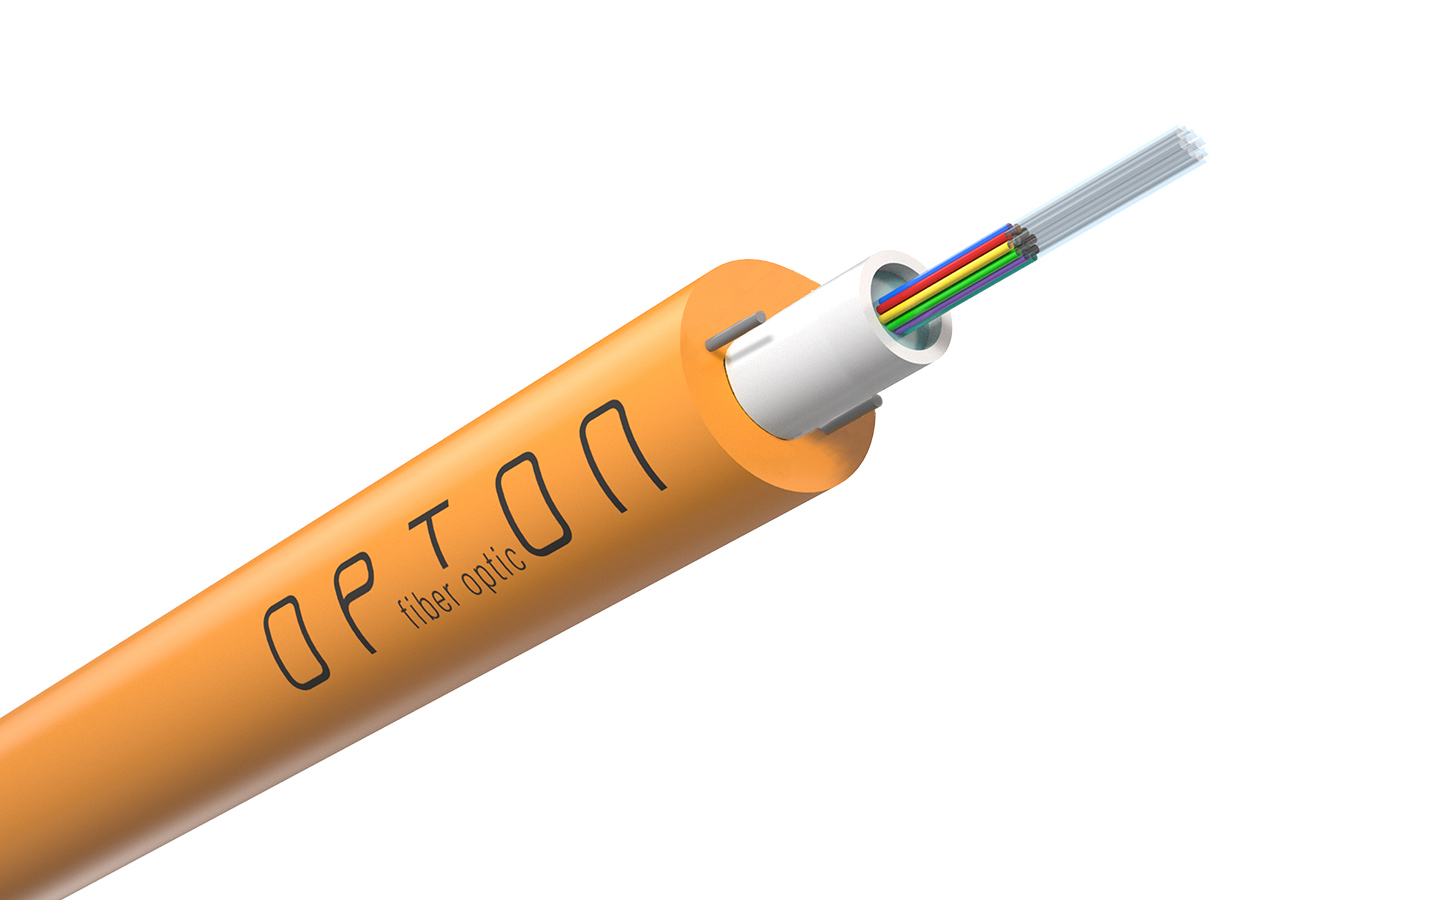 Opton DAC Z-XOTKtcd doziemny kabel światłowodowy, 12 włókien G652D